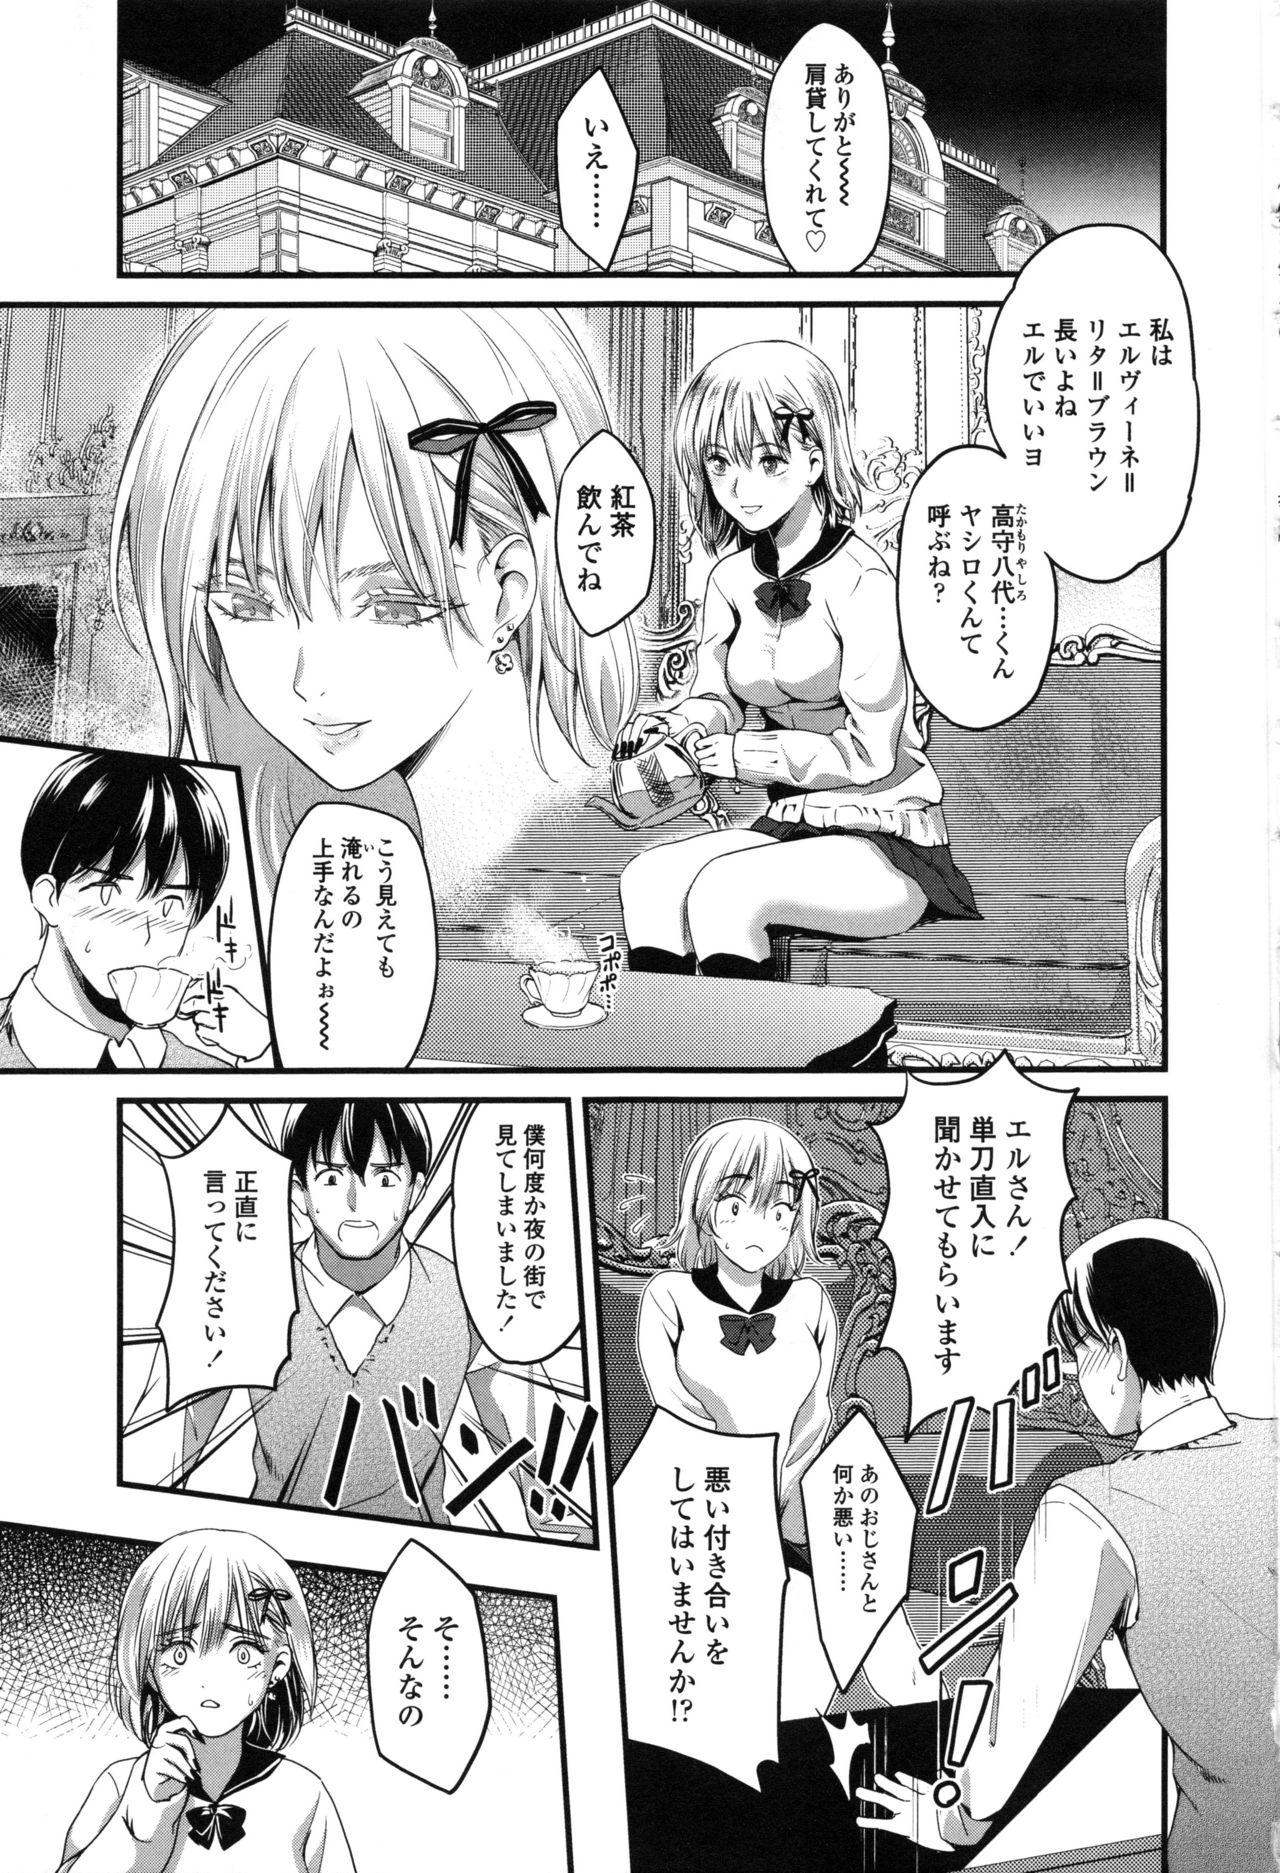 Seifuku no Mama Aishinasai! - Love in school uniform 70